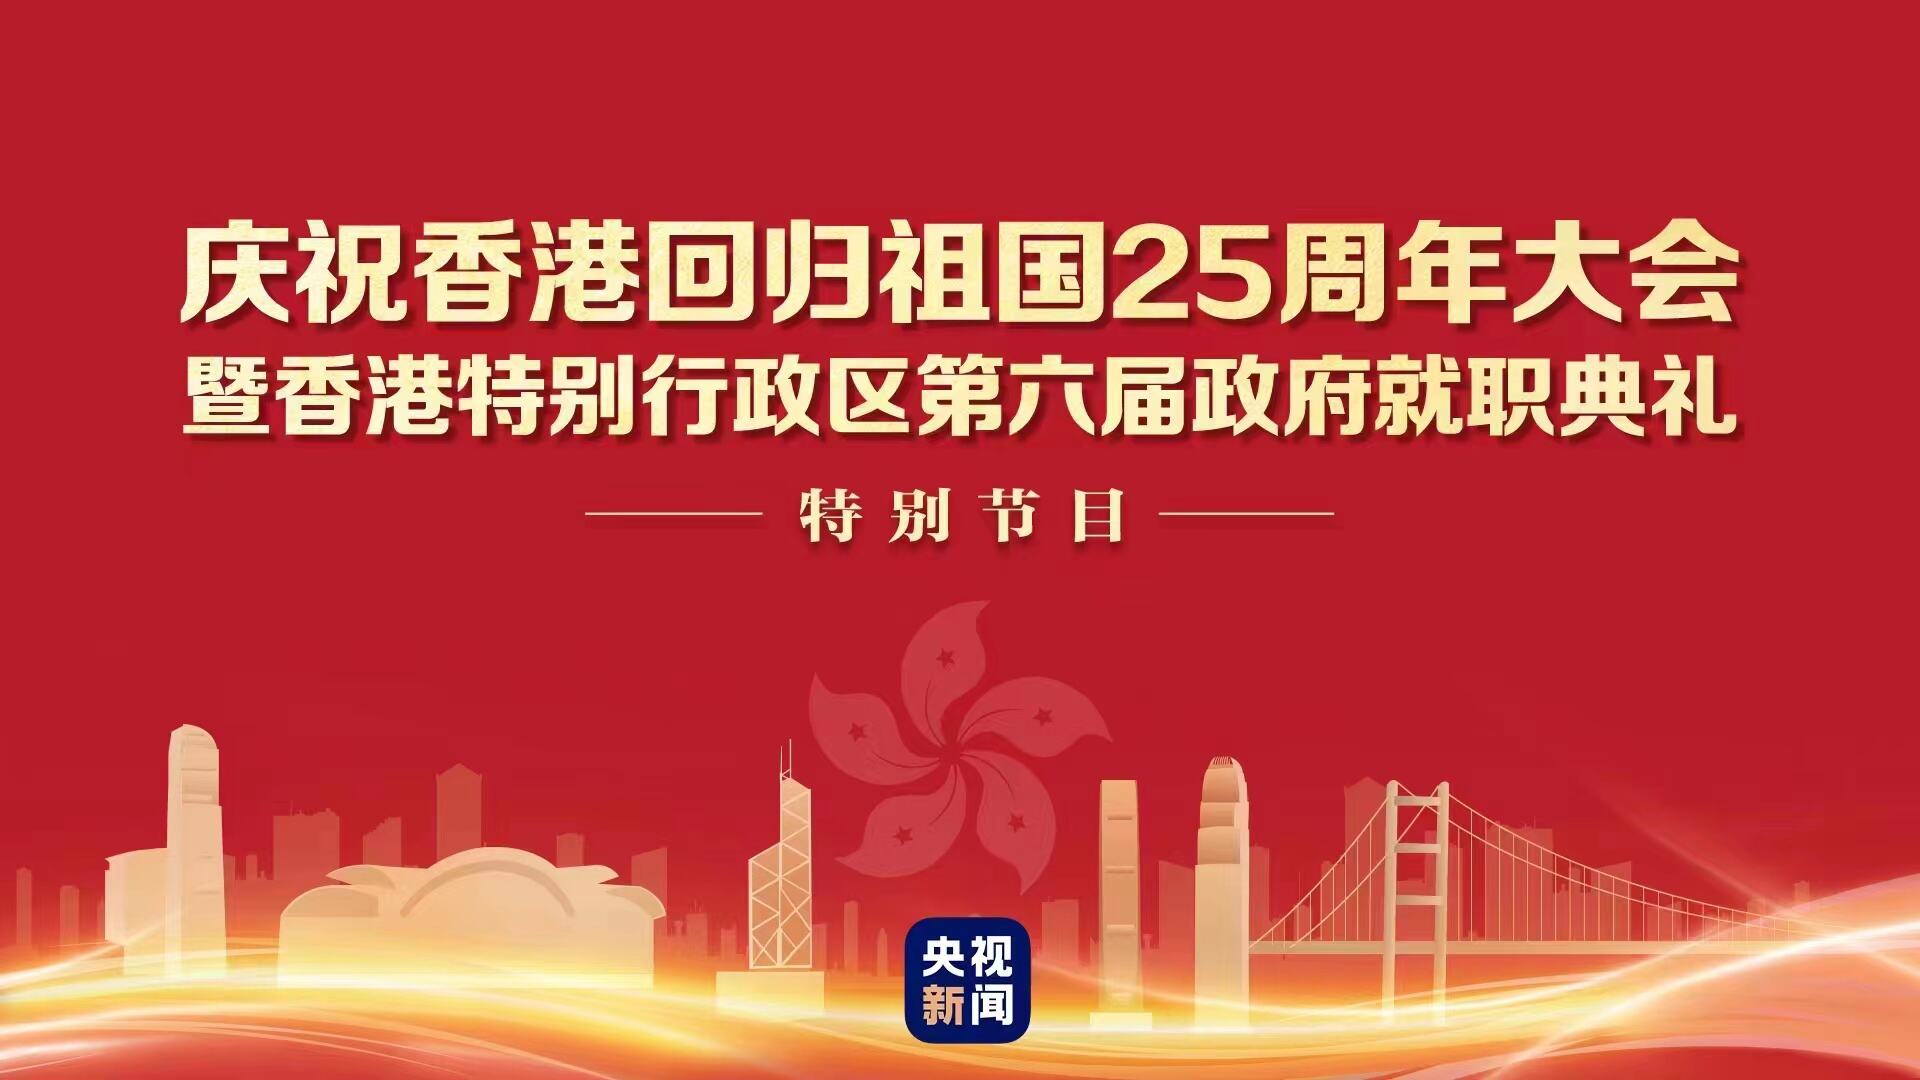 庆祝香港回归祖国25周年大会暨香港特别行政区第六届政府就职典礼